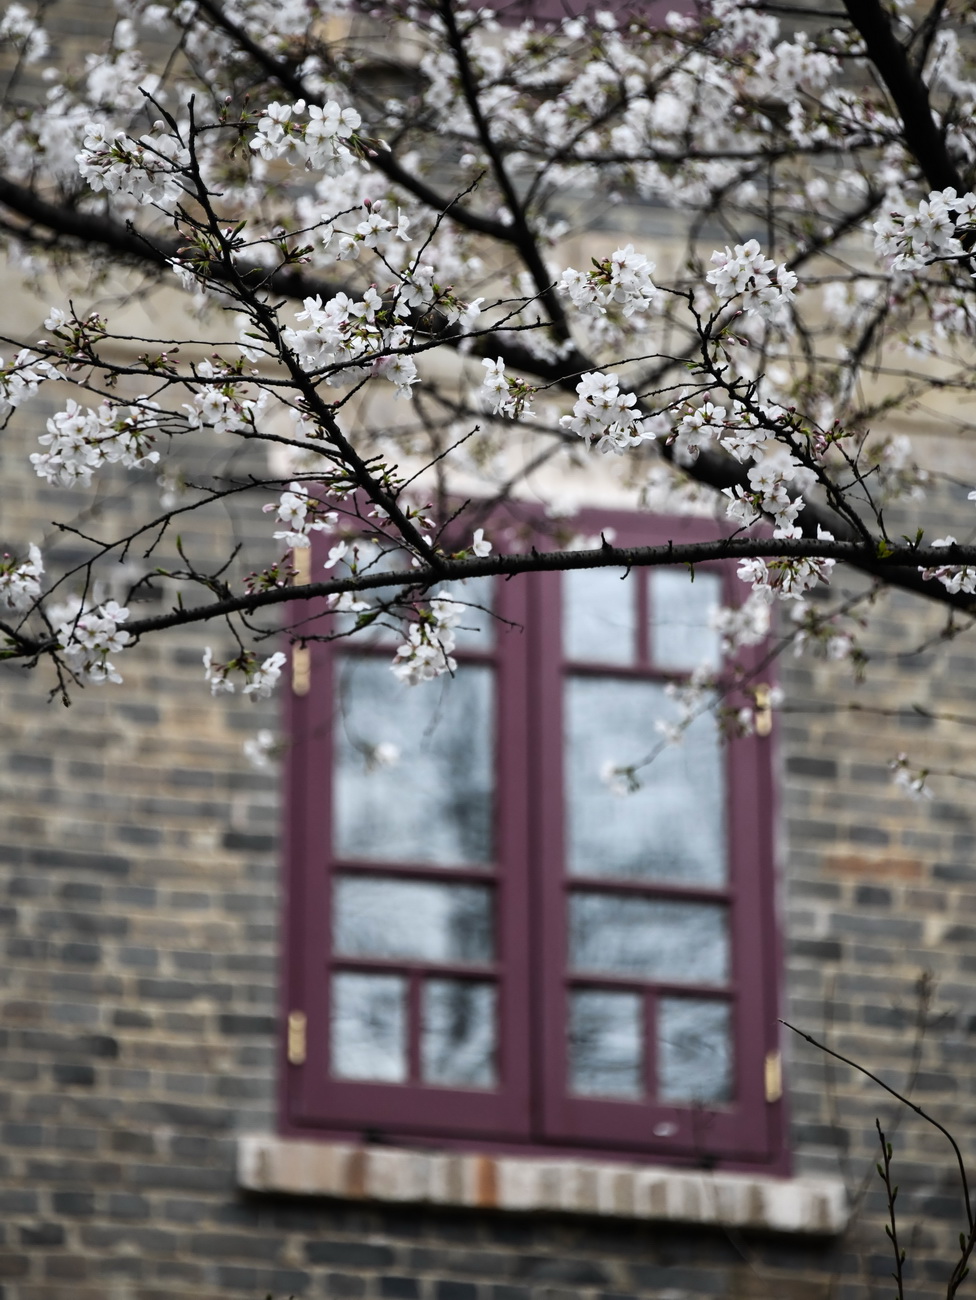 武汉大学校园一角（3月16日摄）。